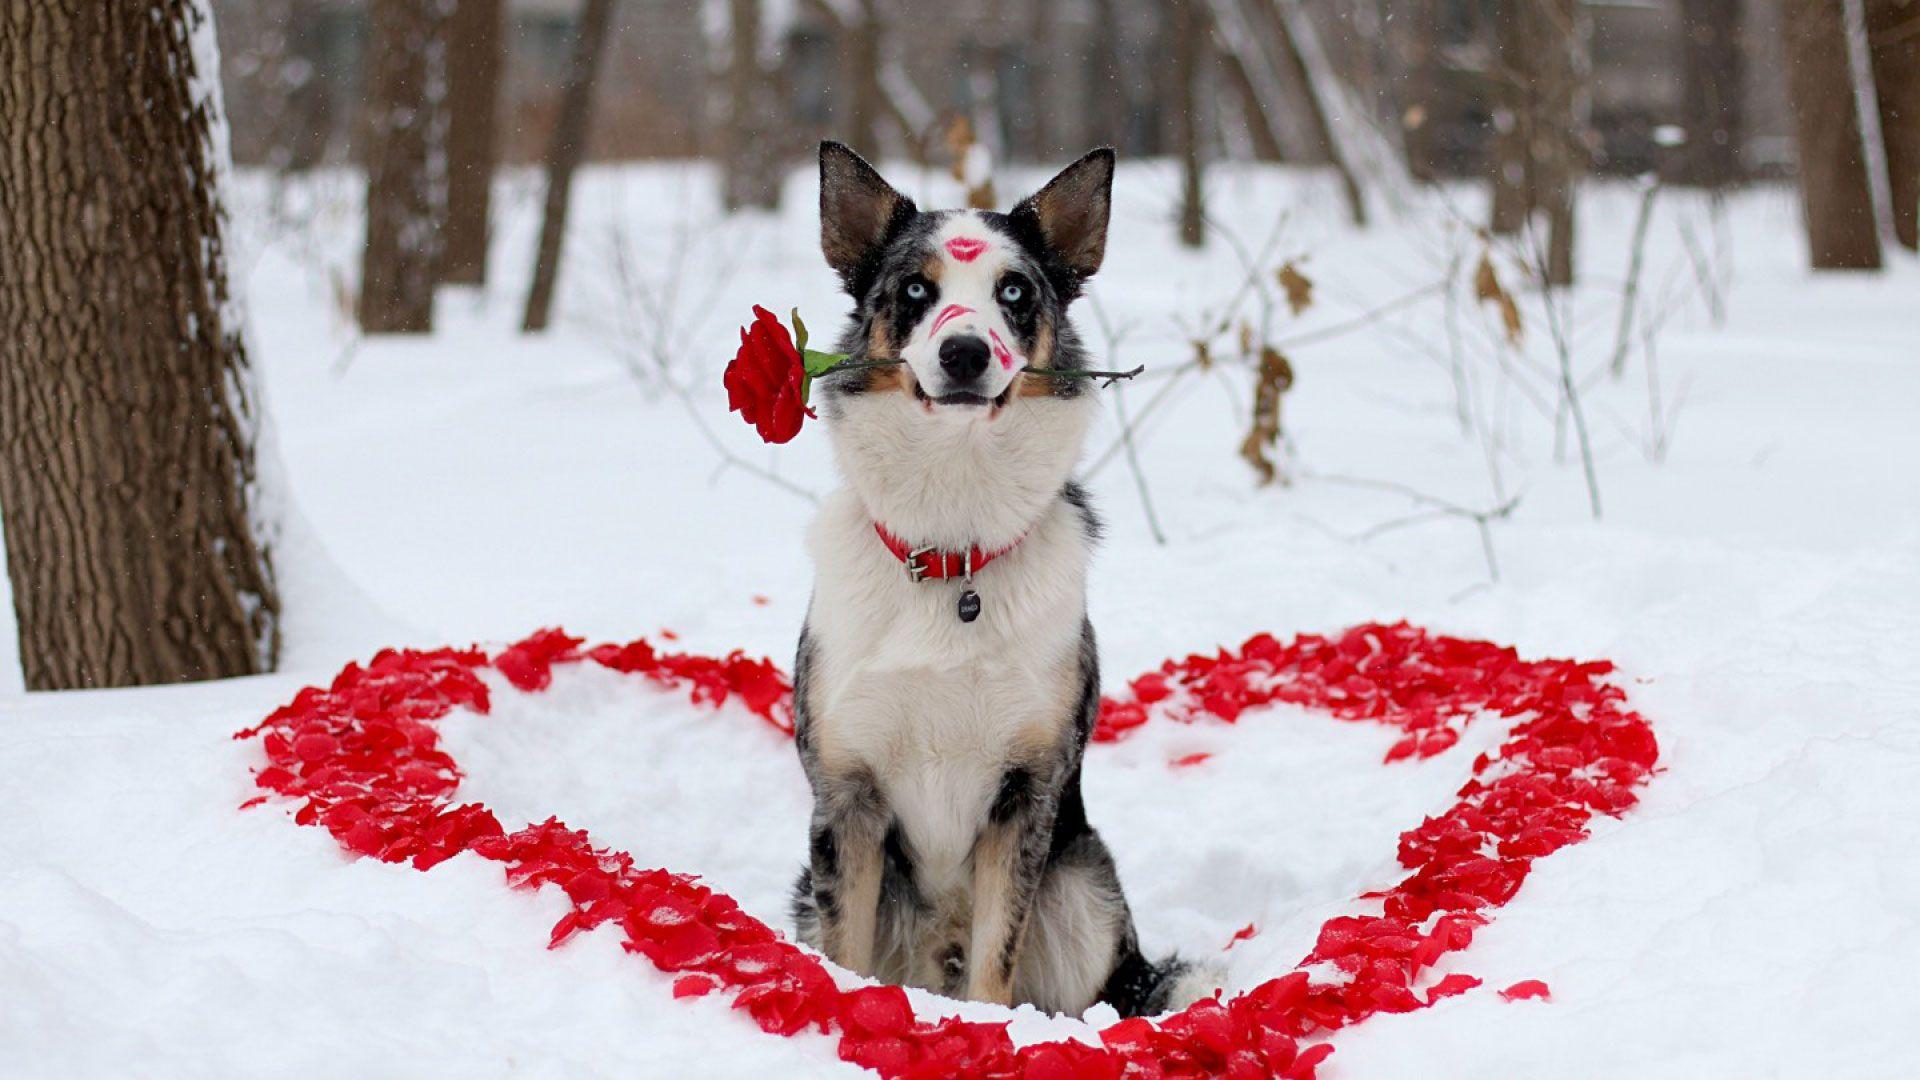 hd pics photo best stunning valentines day flower dog love